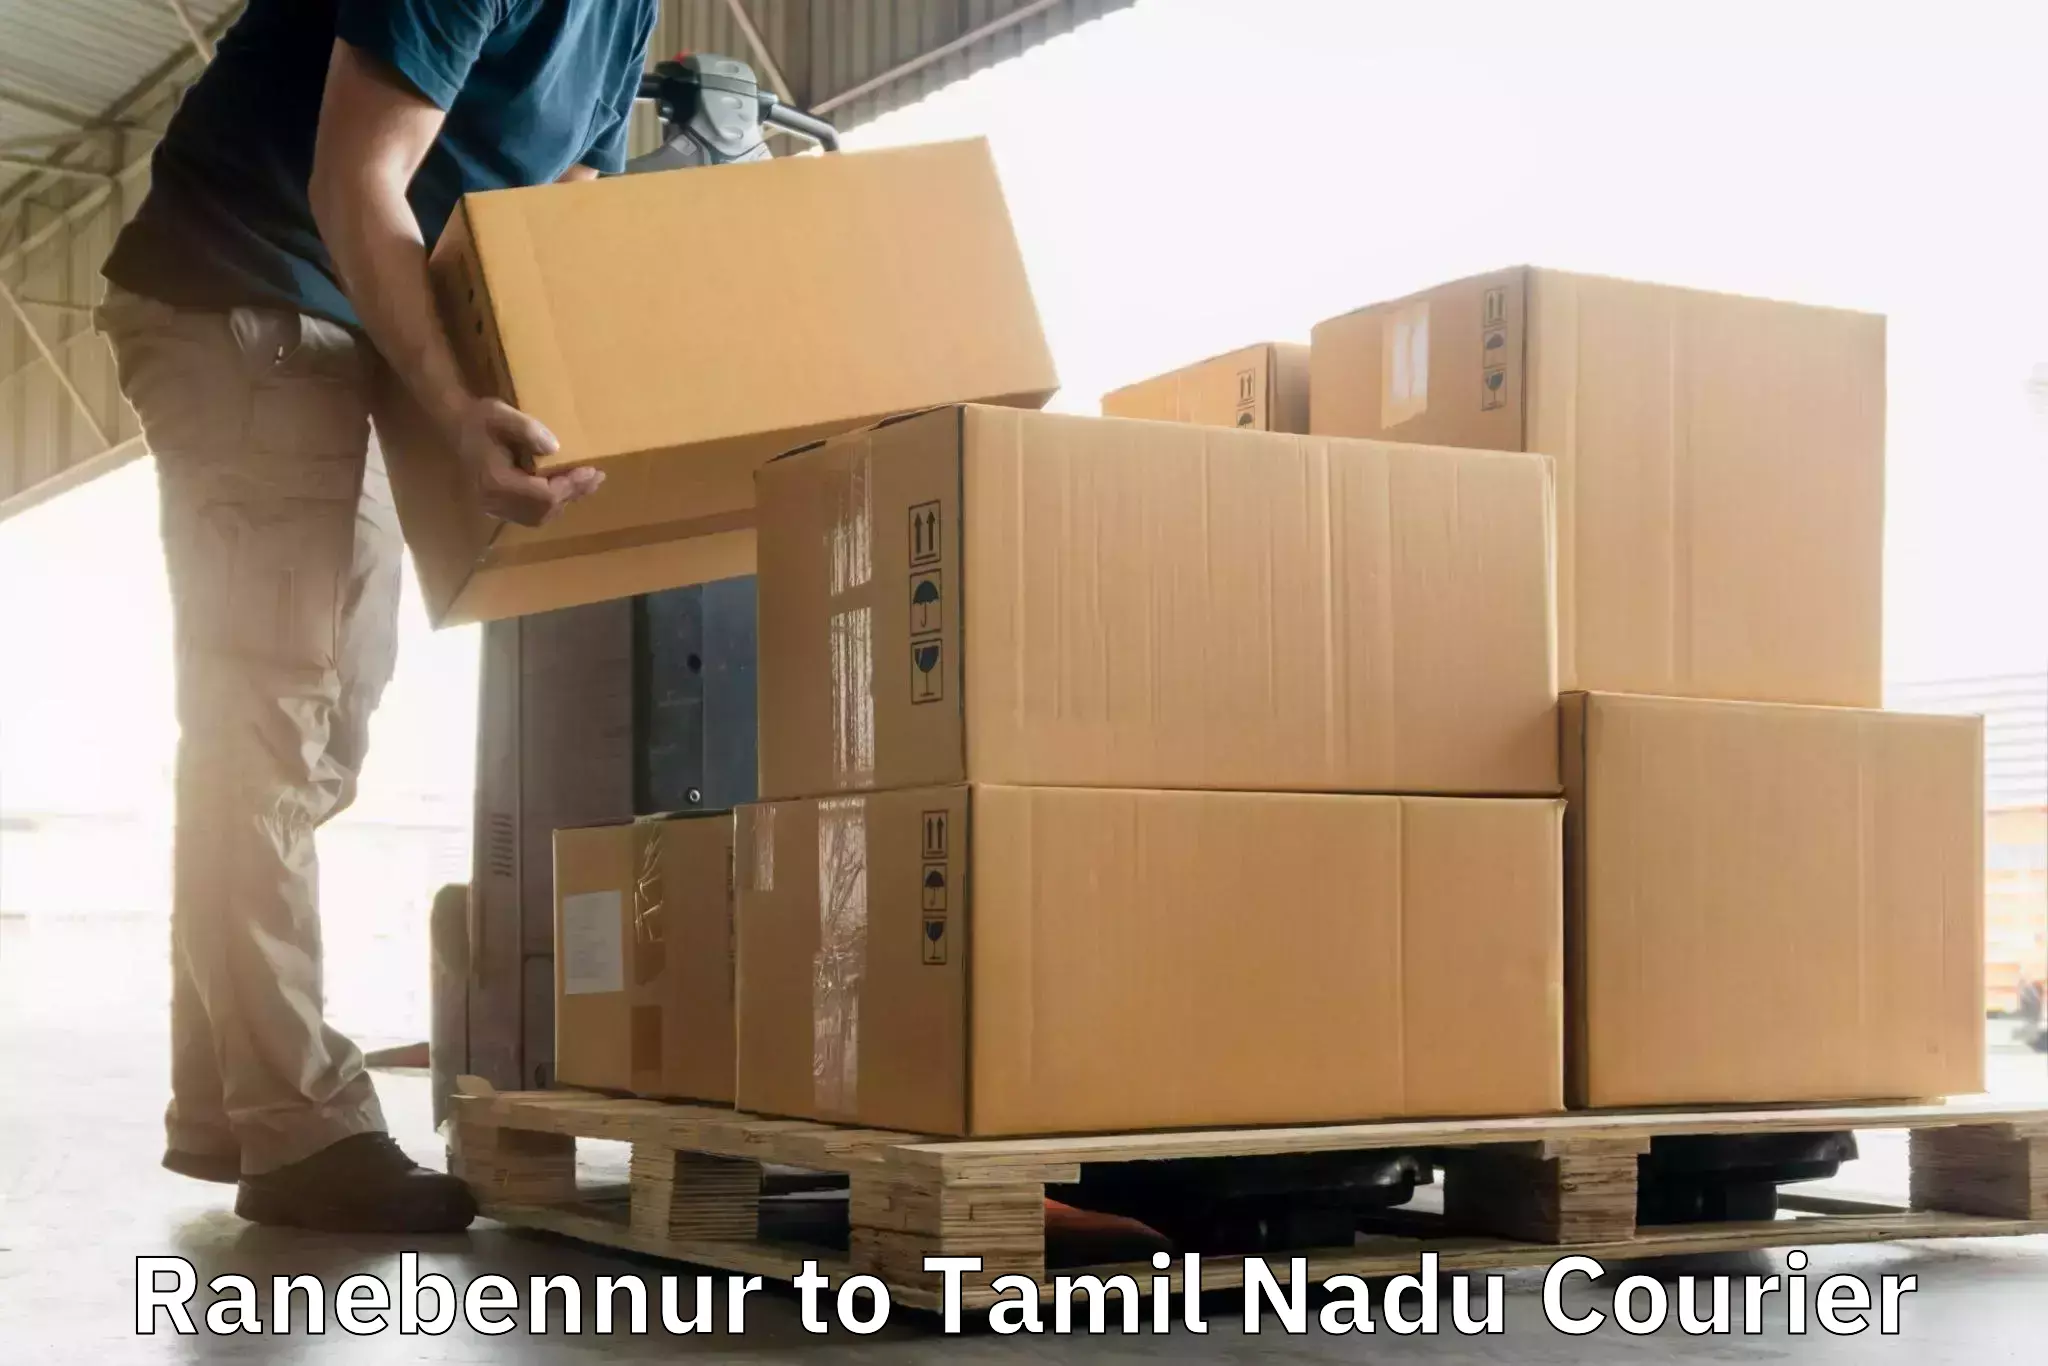 Next-generation courier services Ranebennur to Tiruchendur